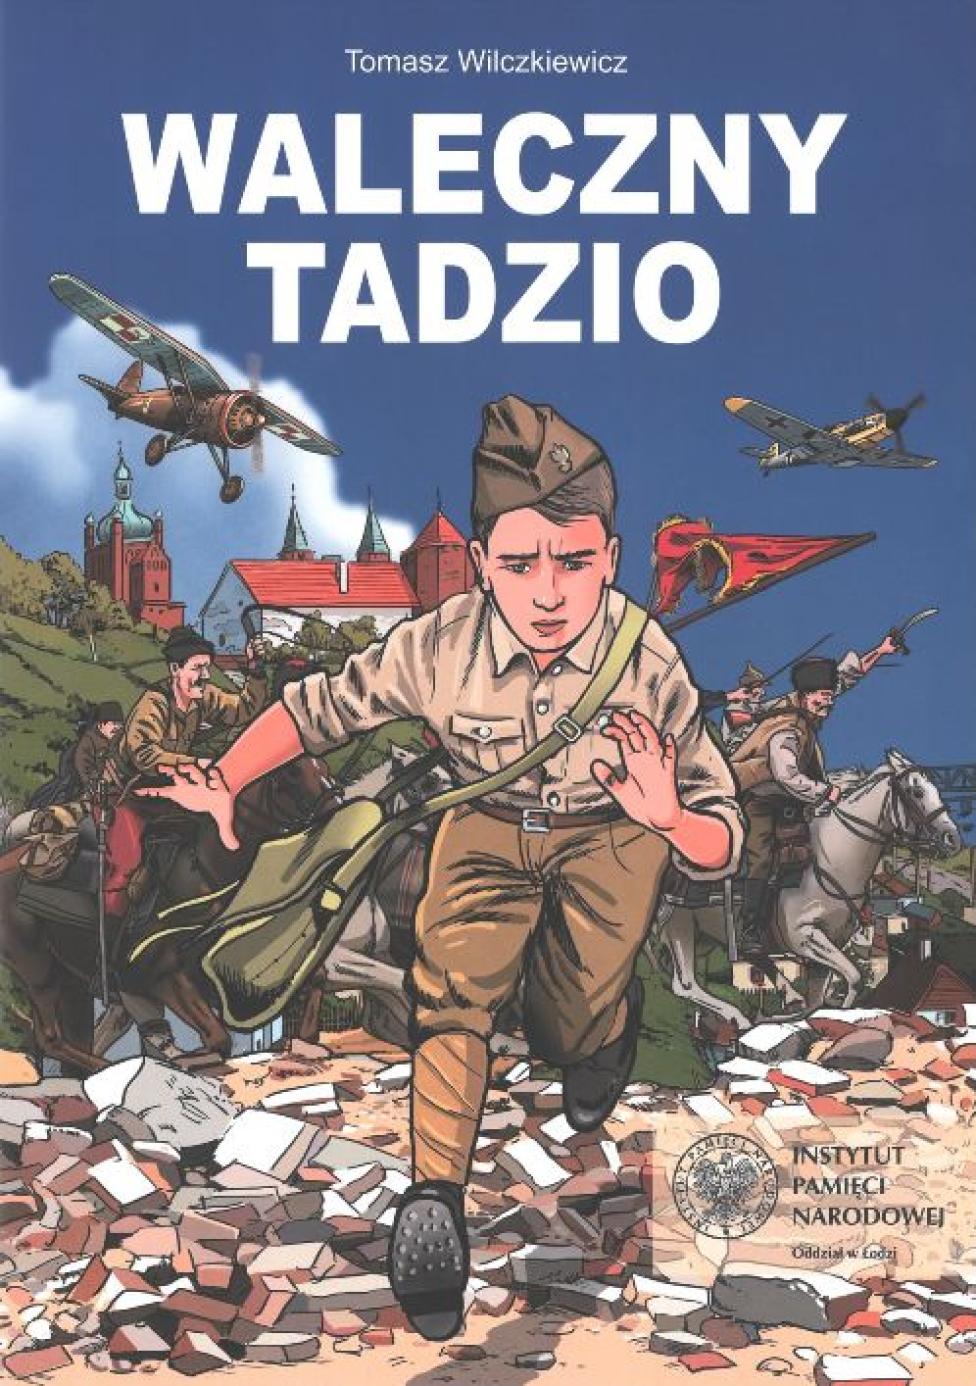 Komiks Tomasza Wilczkiewicza „Waleczny Tadzio” (fot. Instytut Pamięci Narodowej - Oddział w Łodzi)